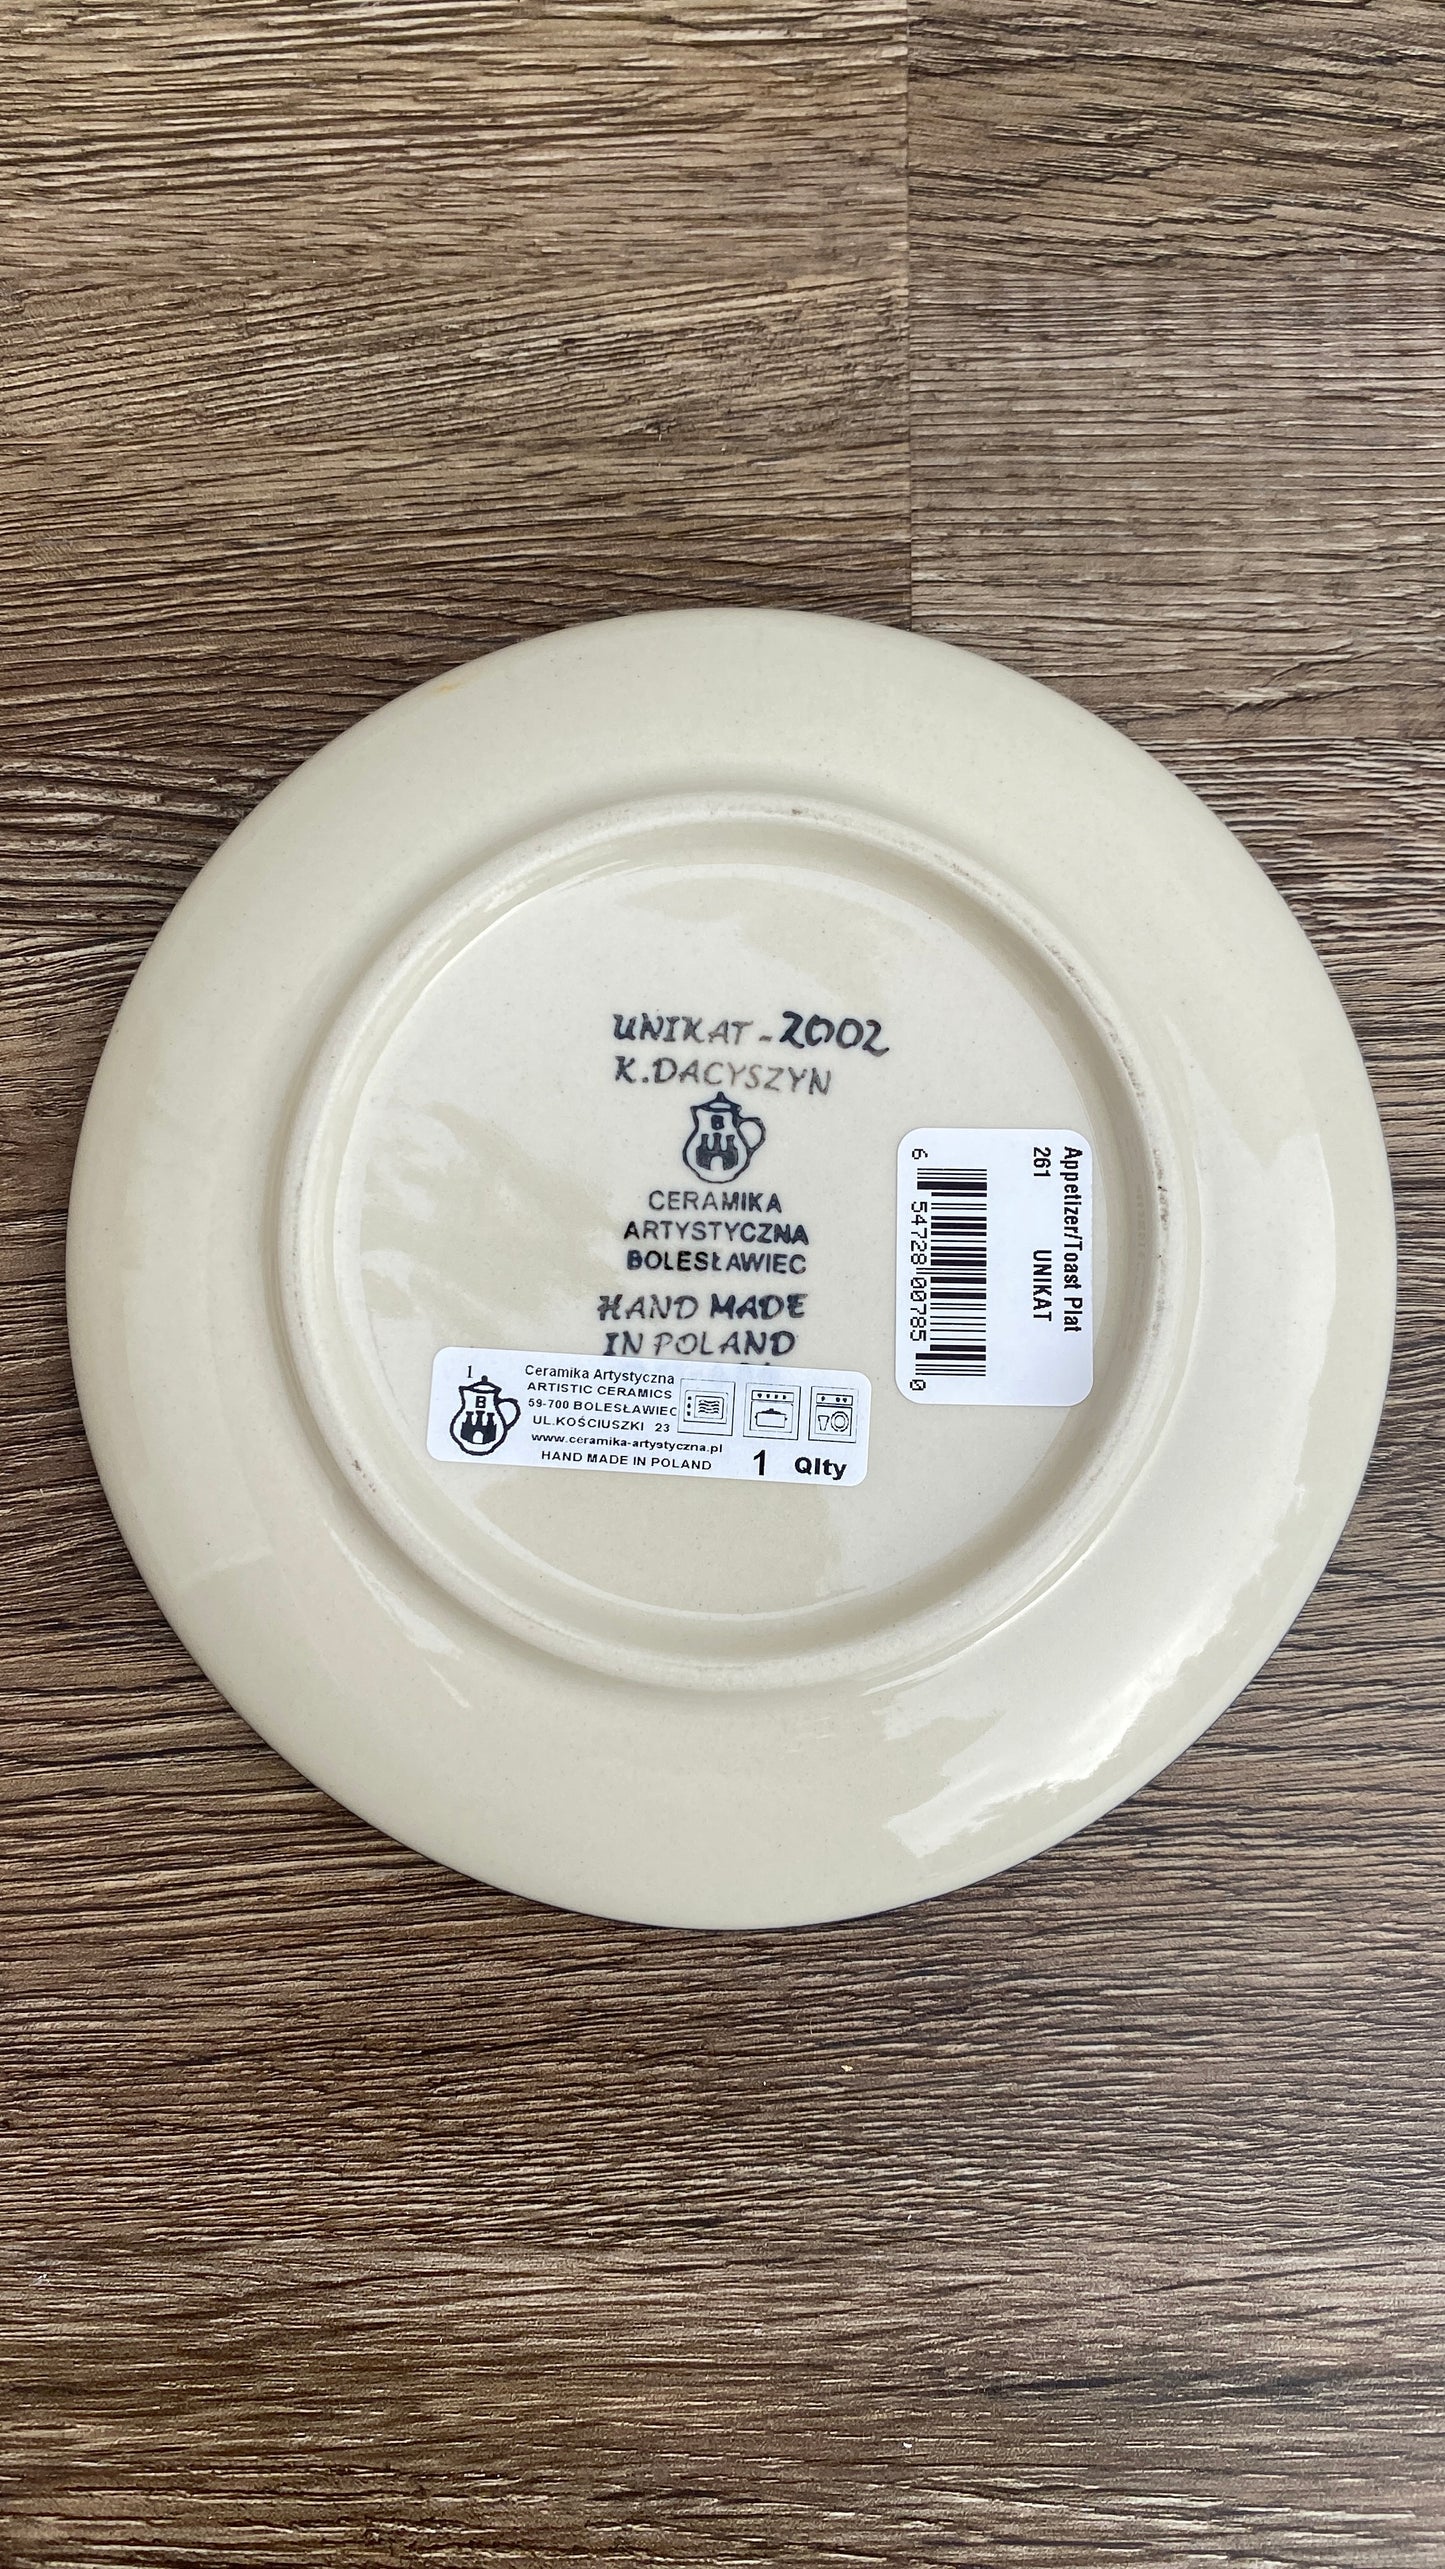 6" Unikat Toast Plate - Shape 261 - Pattern U2002